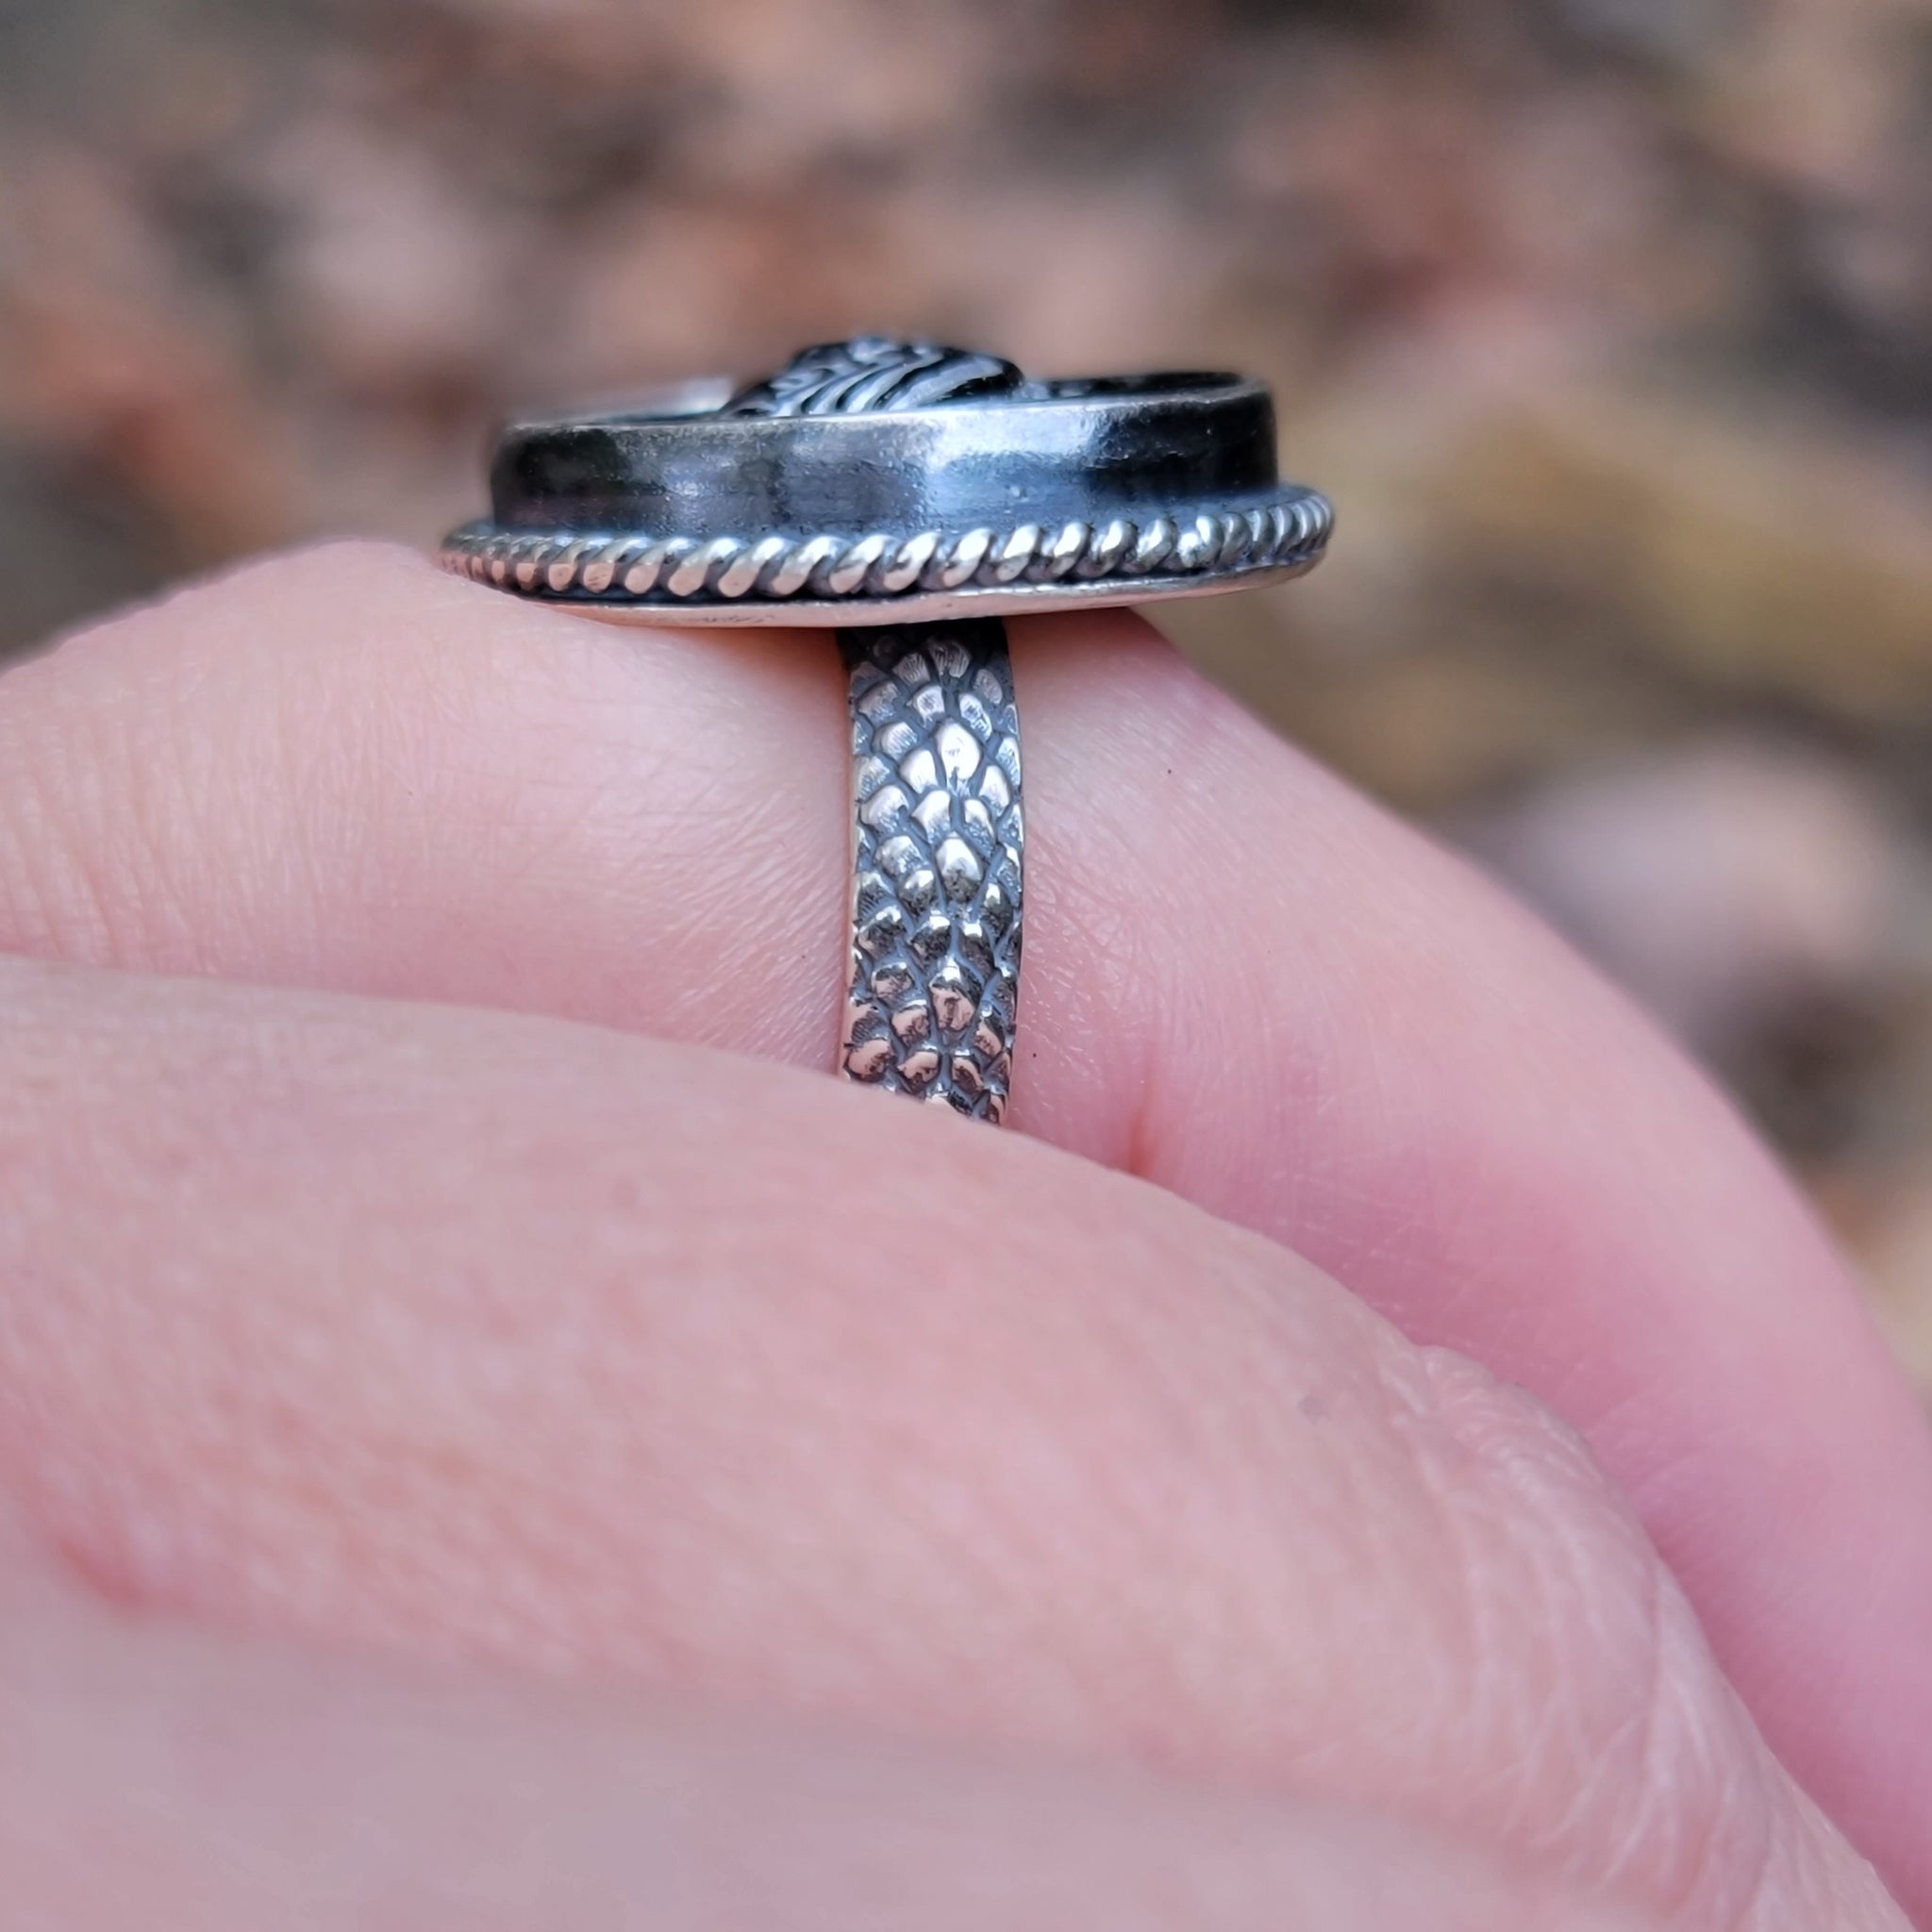 Gothic Gravestone Bird Ring in Sterling Silver